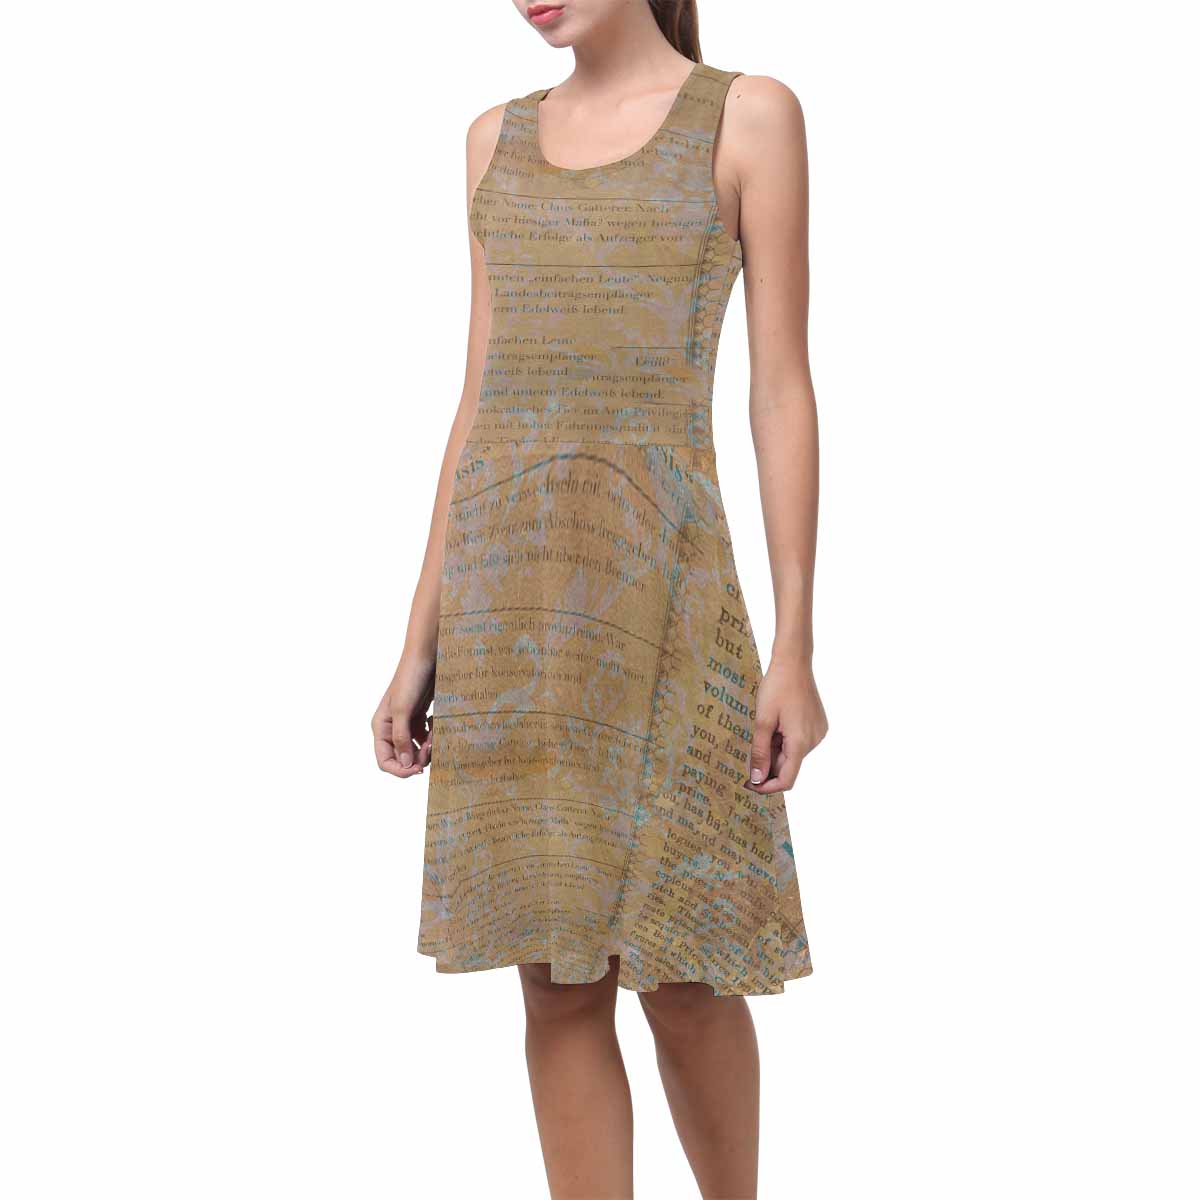 Antique General summer dress, MODEL 09534, design 29